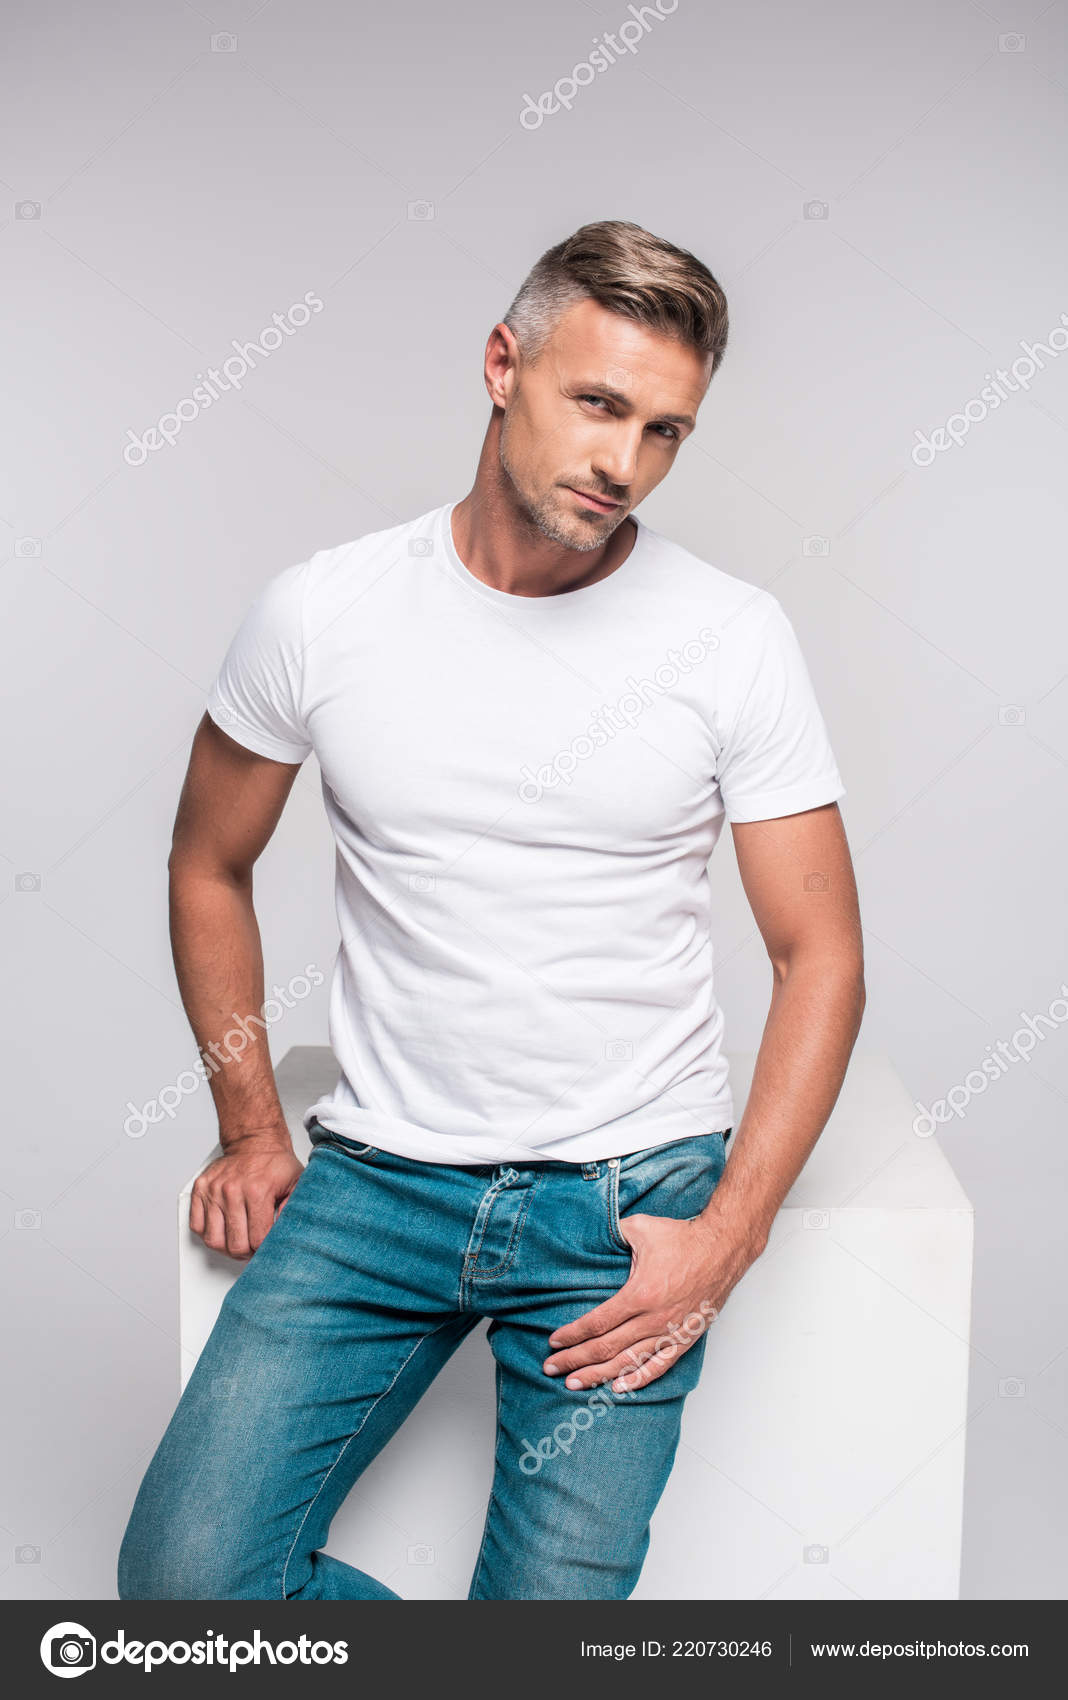 Retrato Homem Bonito Calças Jeans Shirt Branca Sentado Olhando Para fotos,  imagens de © IgorVetushko #220730246